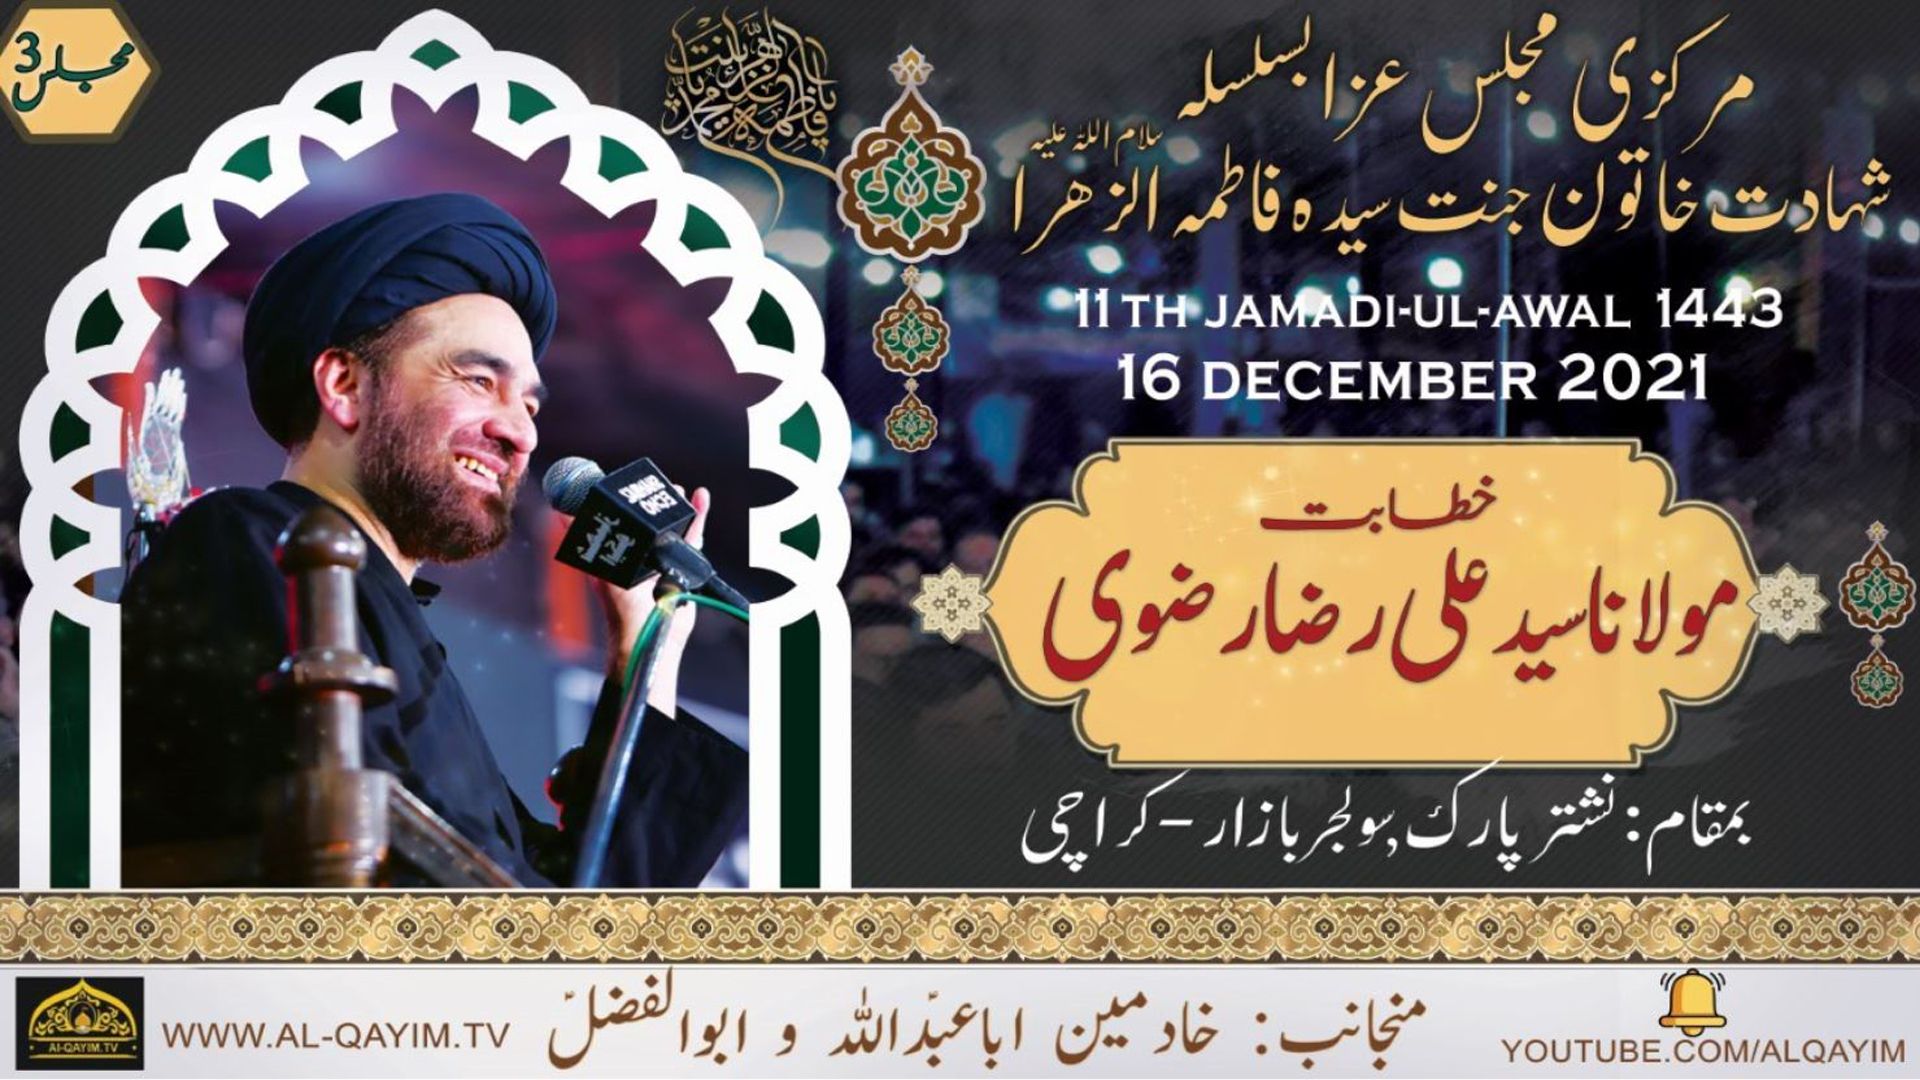 Ayyam-e-Fatima Majlis #3 | Maulana Ali Raza Rizvi | 11 Jamadi Awal 1443/2021 - Nishtar Park, Karachi